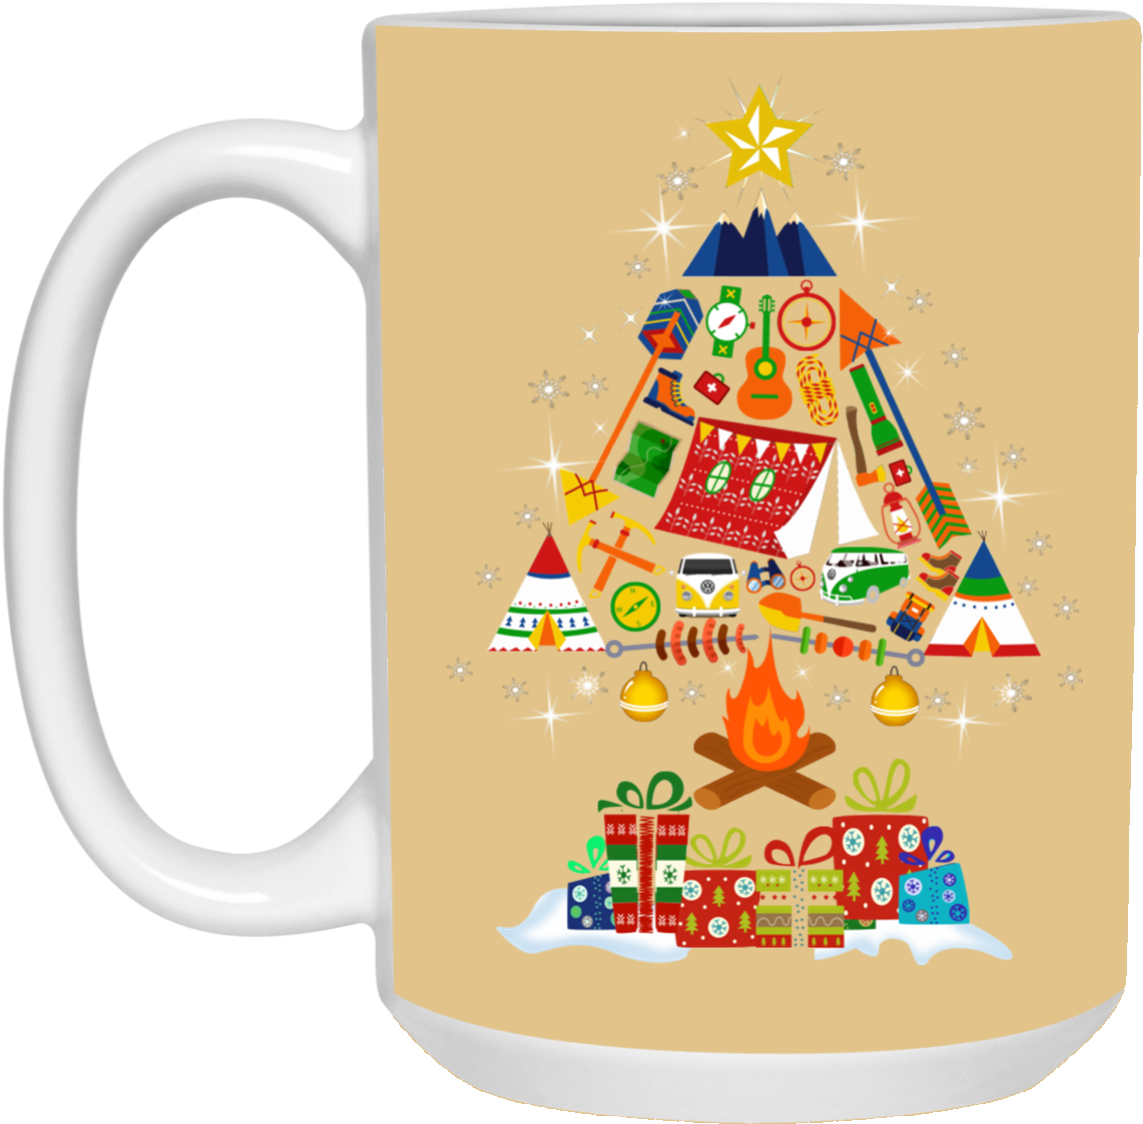 Festive Christmas Tree Mug Design PNG image